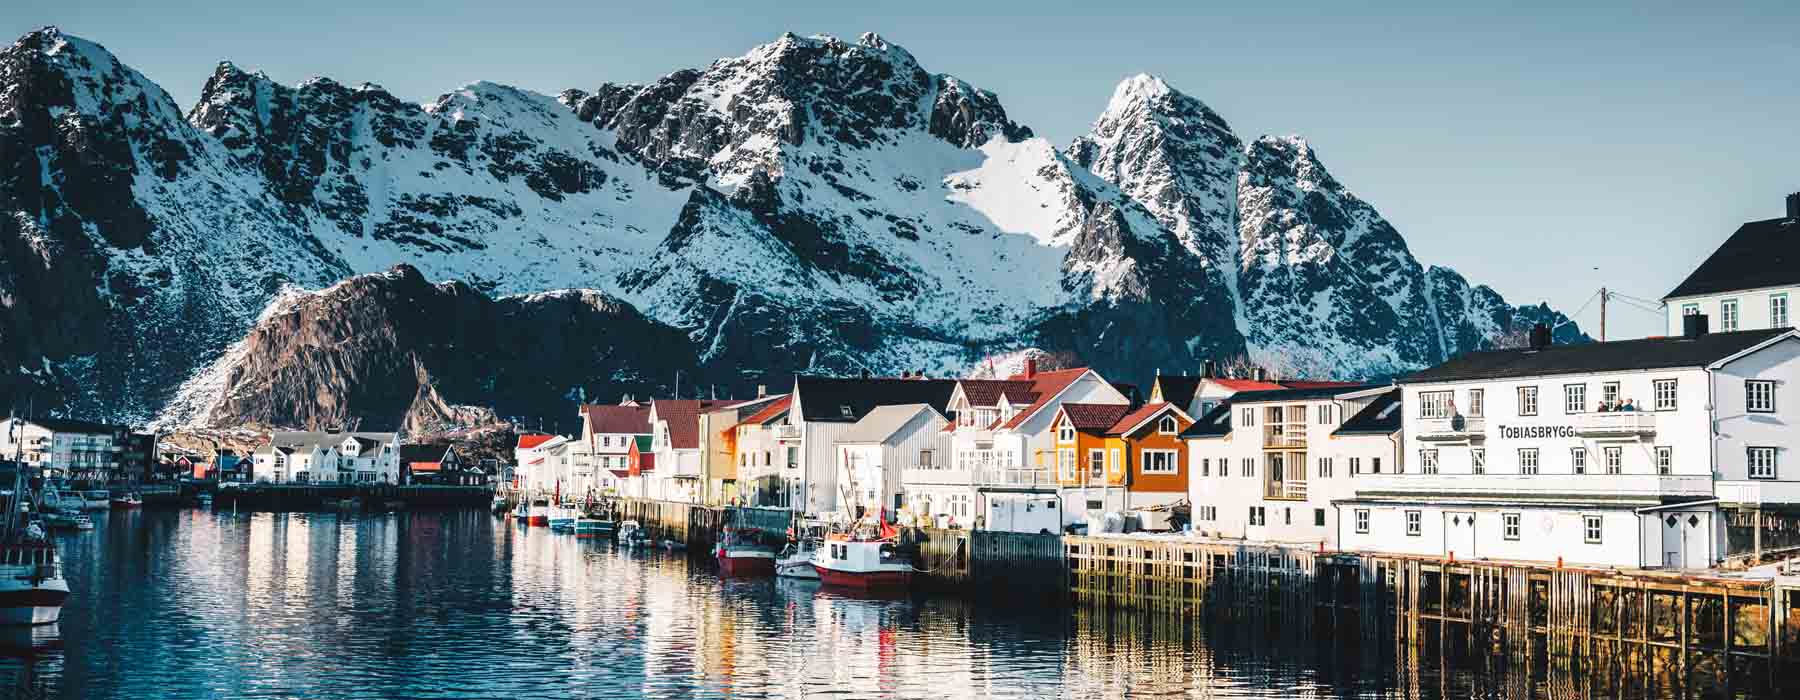 Norway<br class="hidden-md hidden-lg" /> Responsible Travel